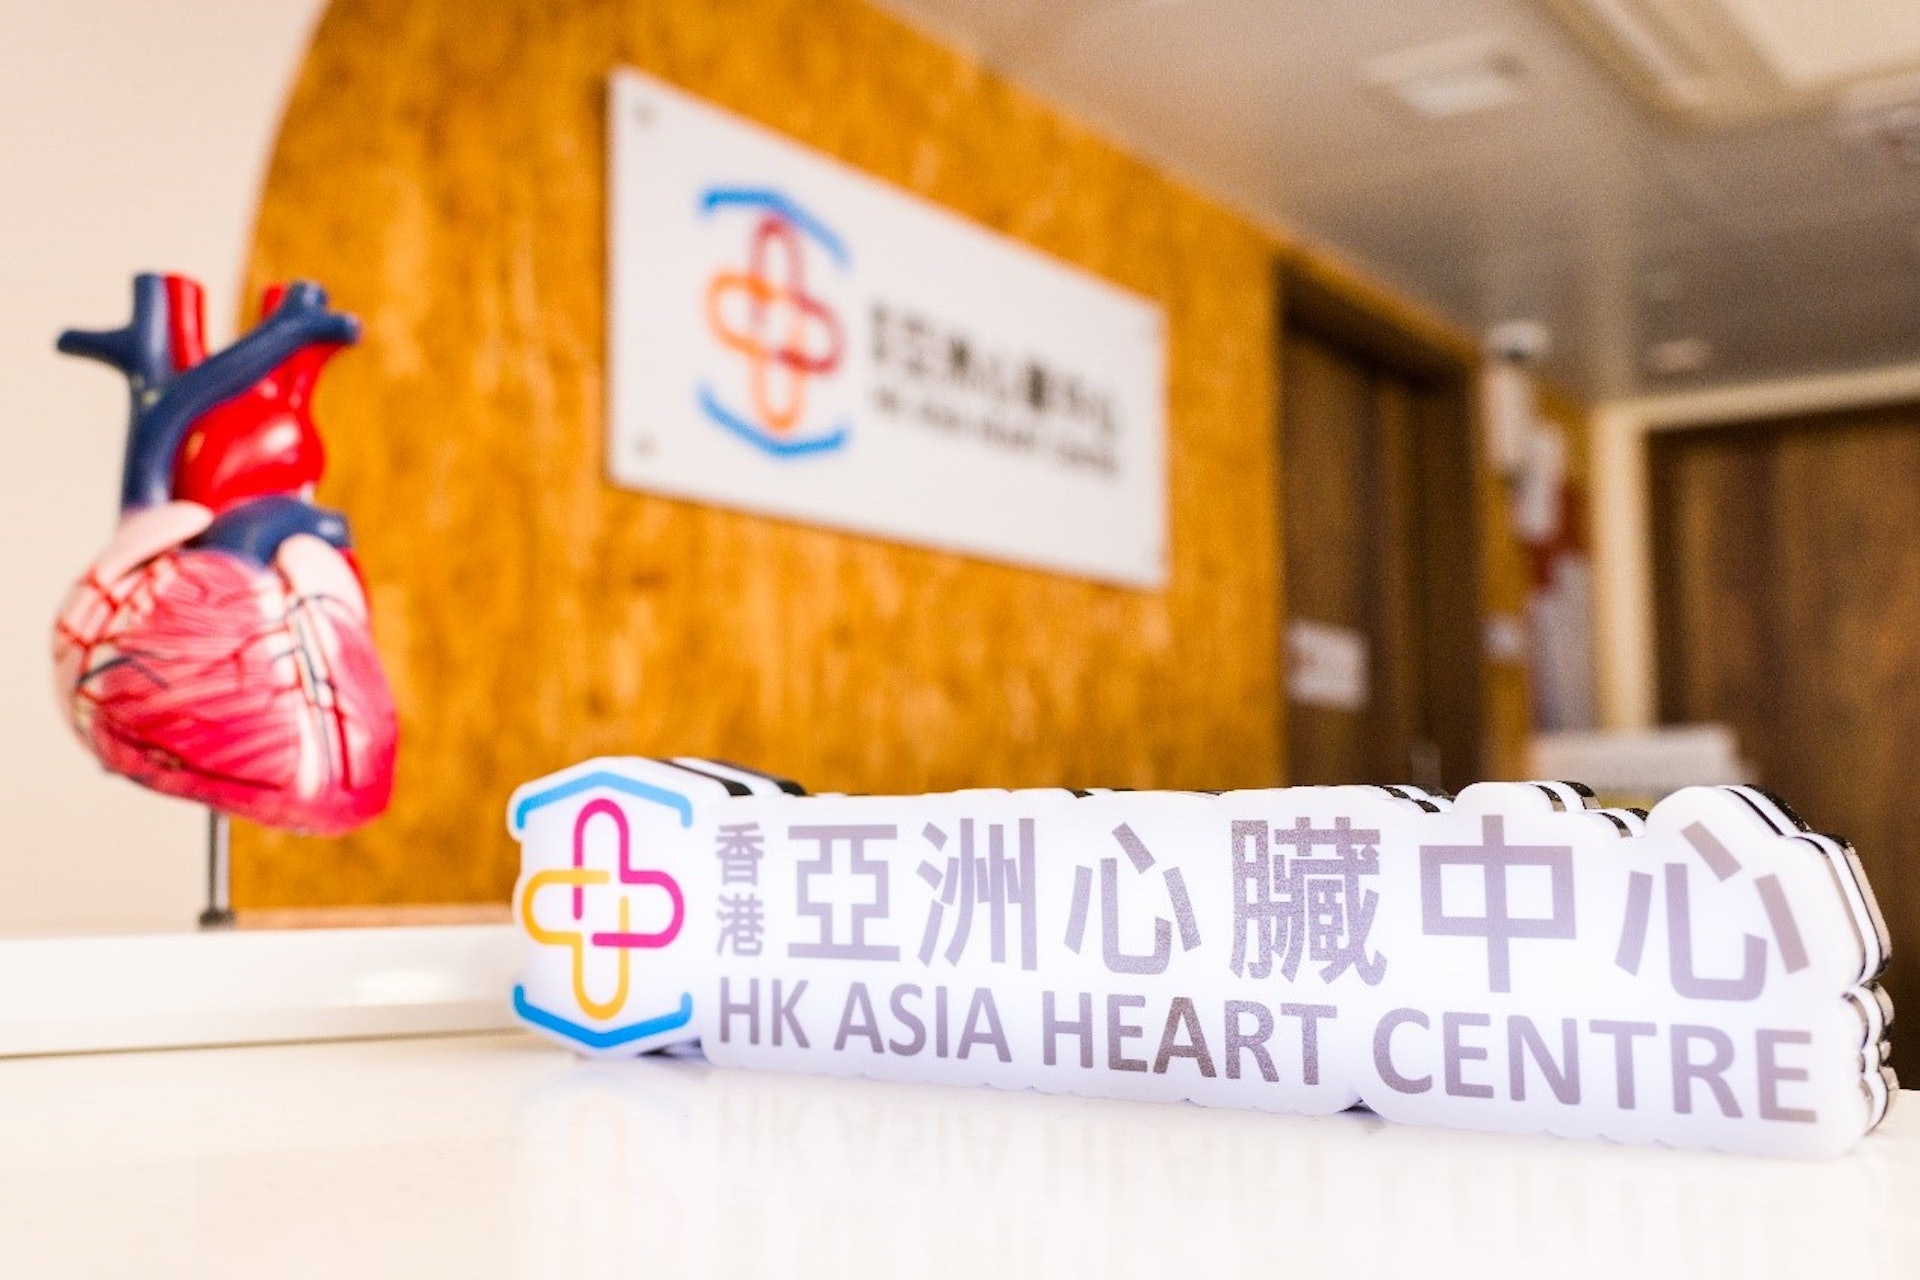 香港亞洲心臟中心由檢查、診斷到治療提供一站式服務，務求為市民的心臟健康盡心盡力。